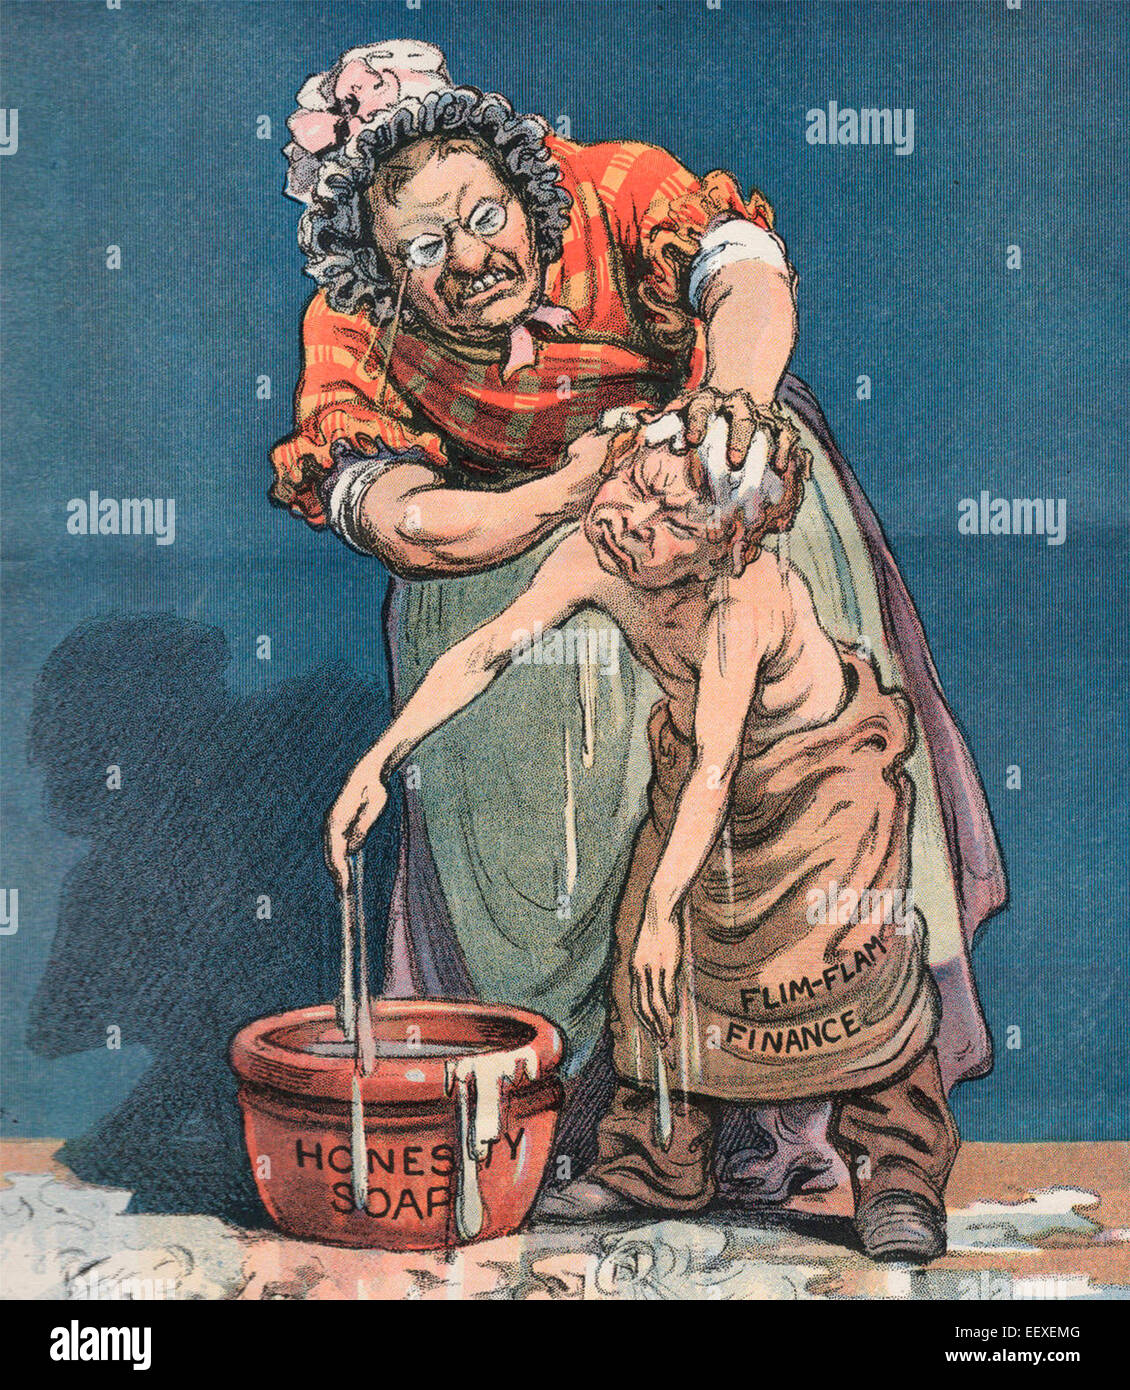 Le président Theodore Roosevelt Finances Scrubbing Soap avec honnêteté, Caricature politique, vers 1907 Banque D'Images